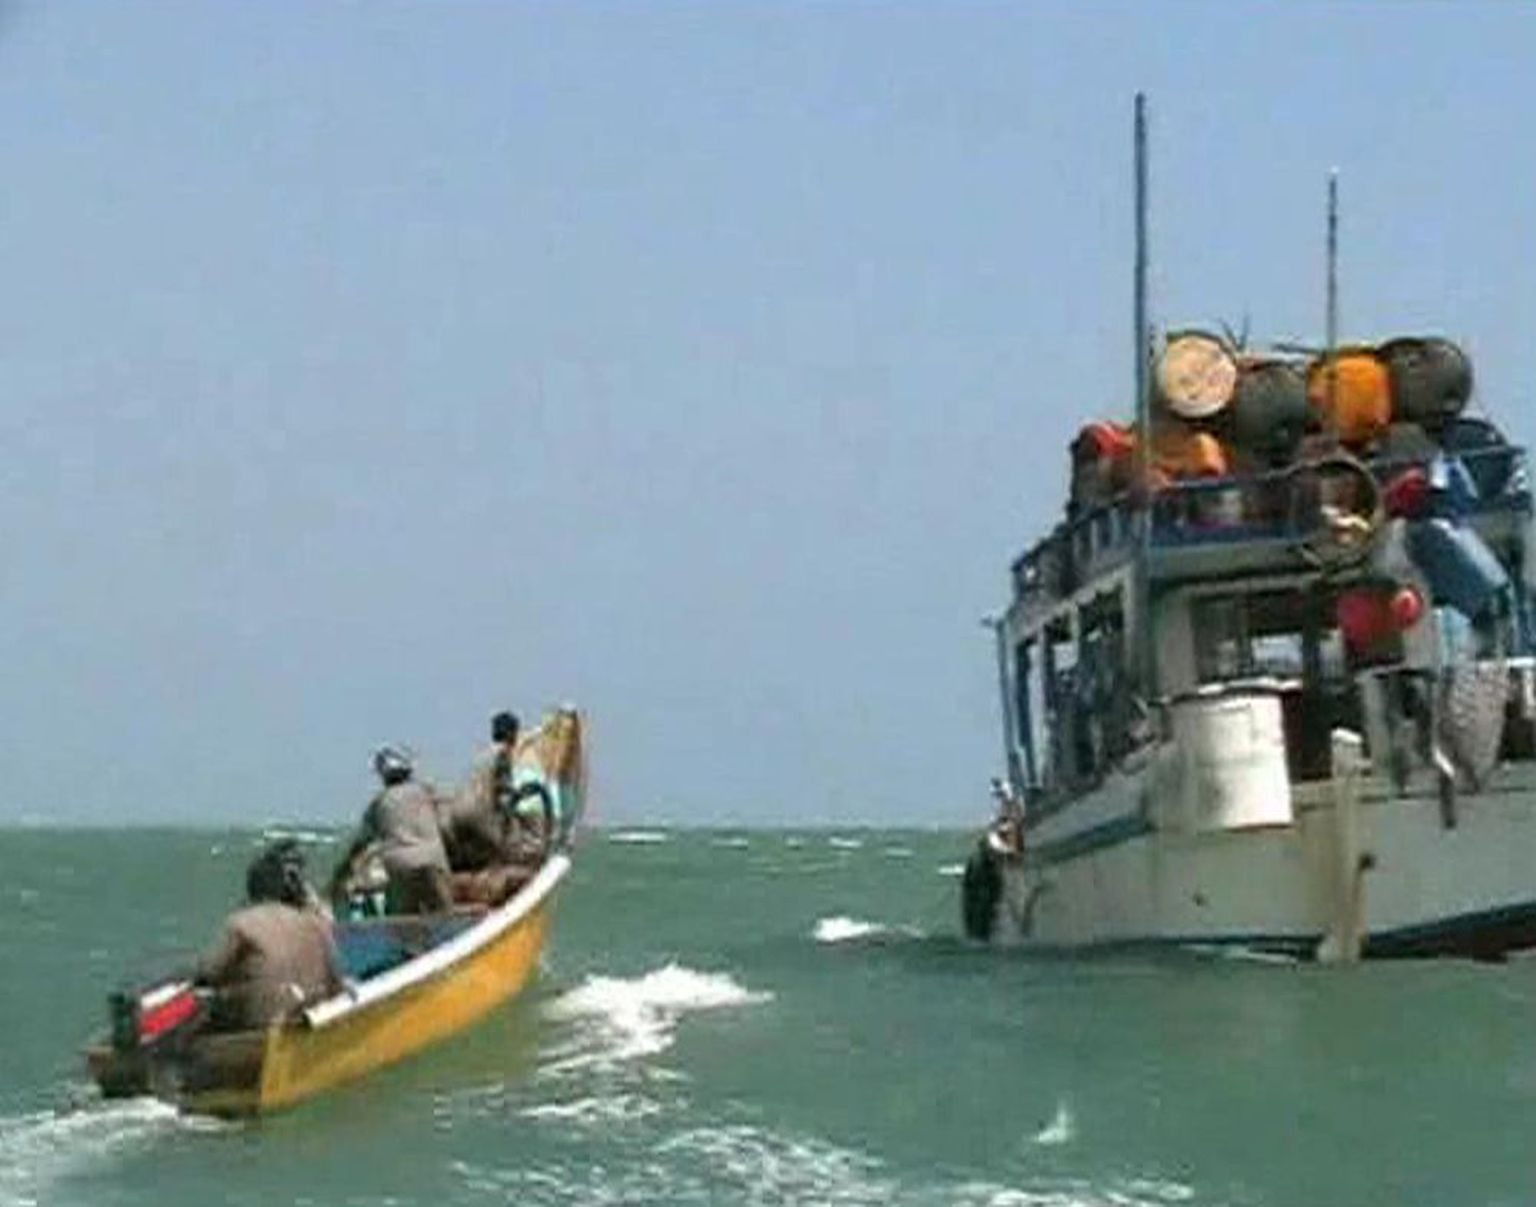 Somaalia piraadid lähenemas kiirpaadil oma emalaevale.